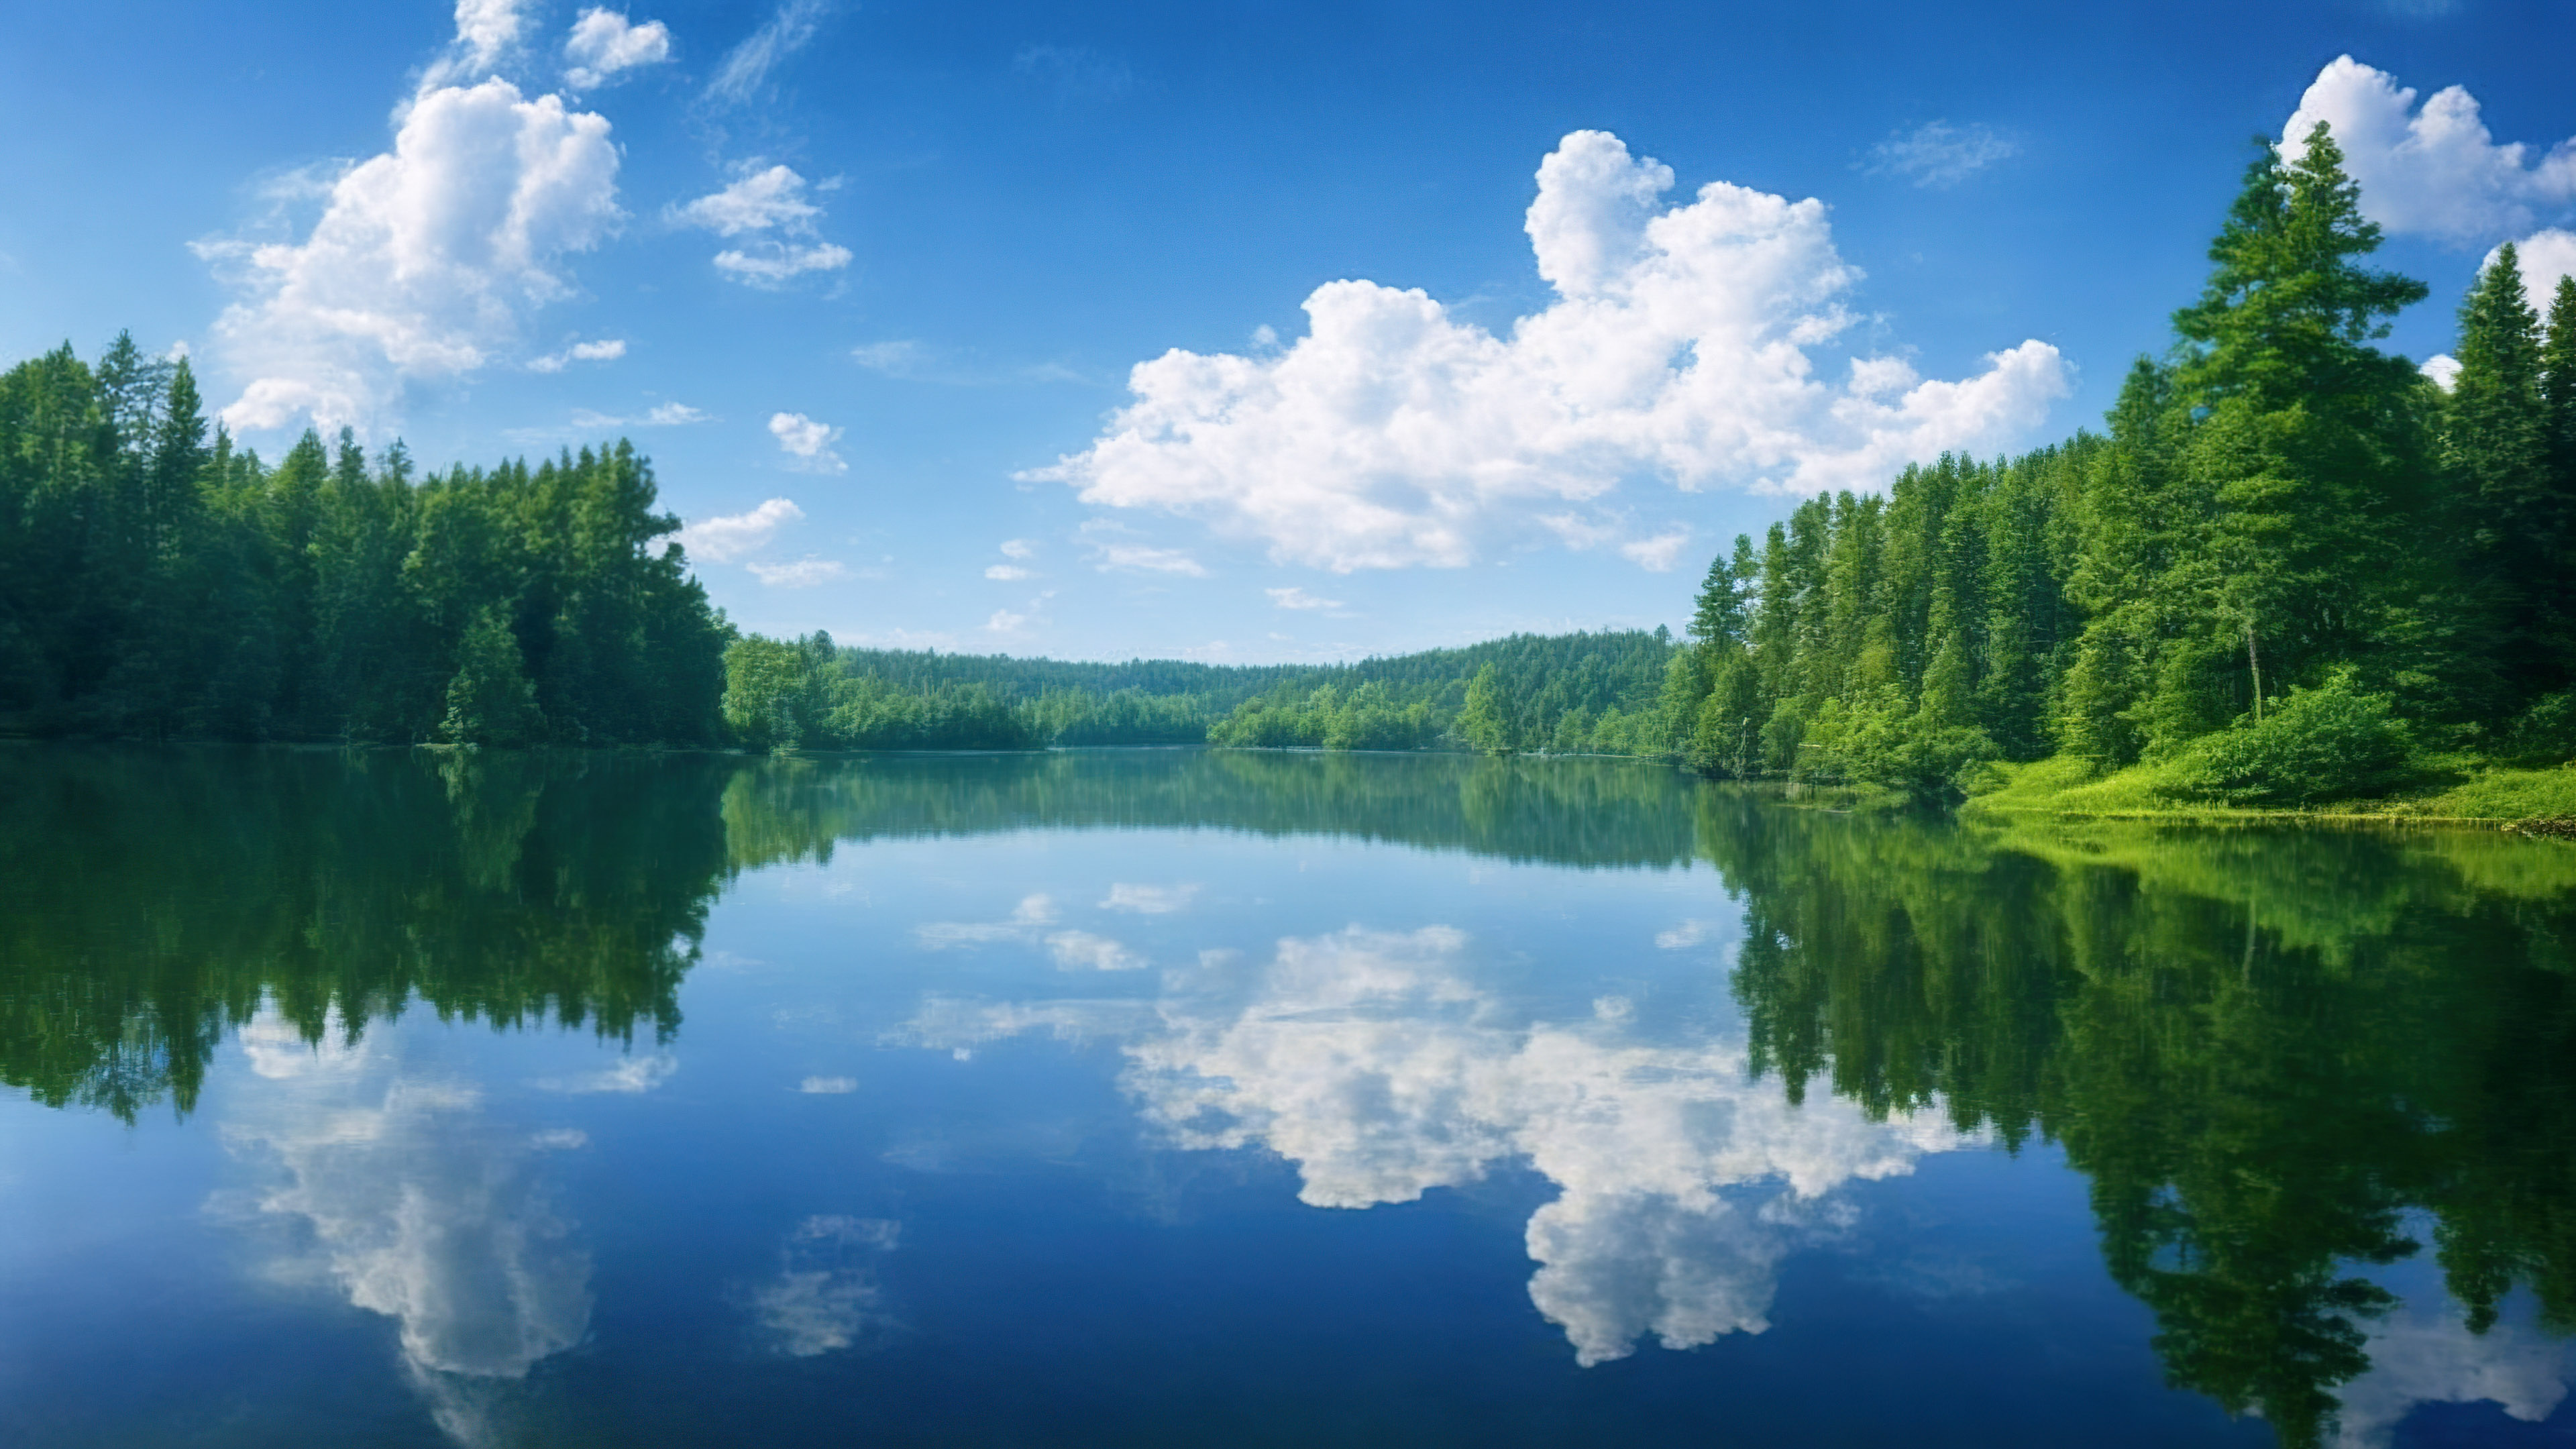 Saisissez la sérénité d'un lac paisible reflétant un ciel parsemé de nuages, entouré de forêts verdoyantes avec notre fond d'écran d'arbres en 4K.